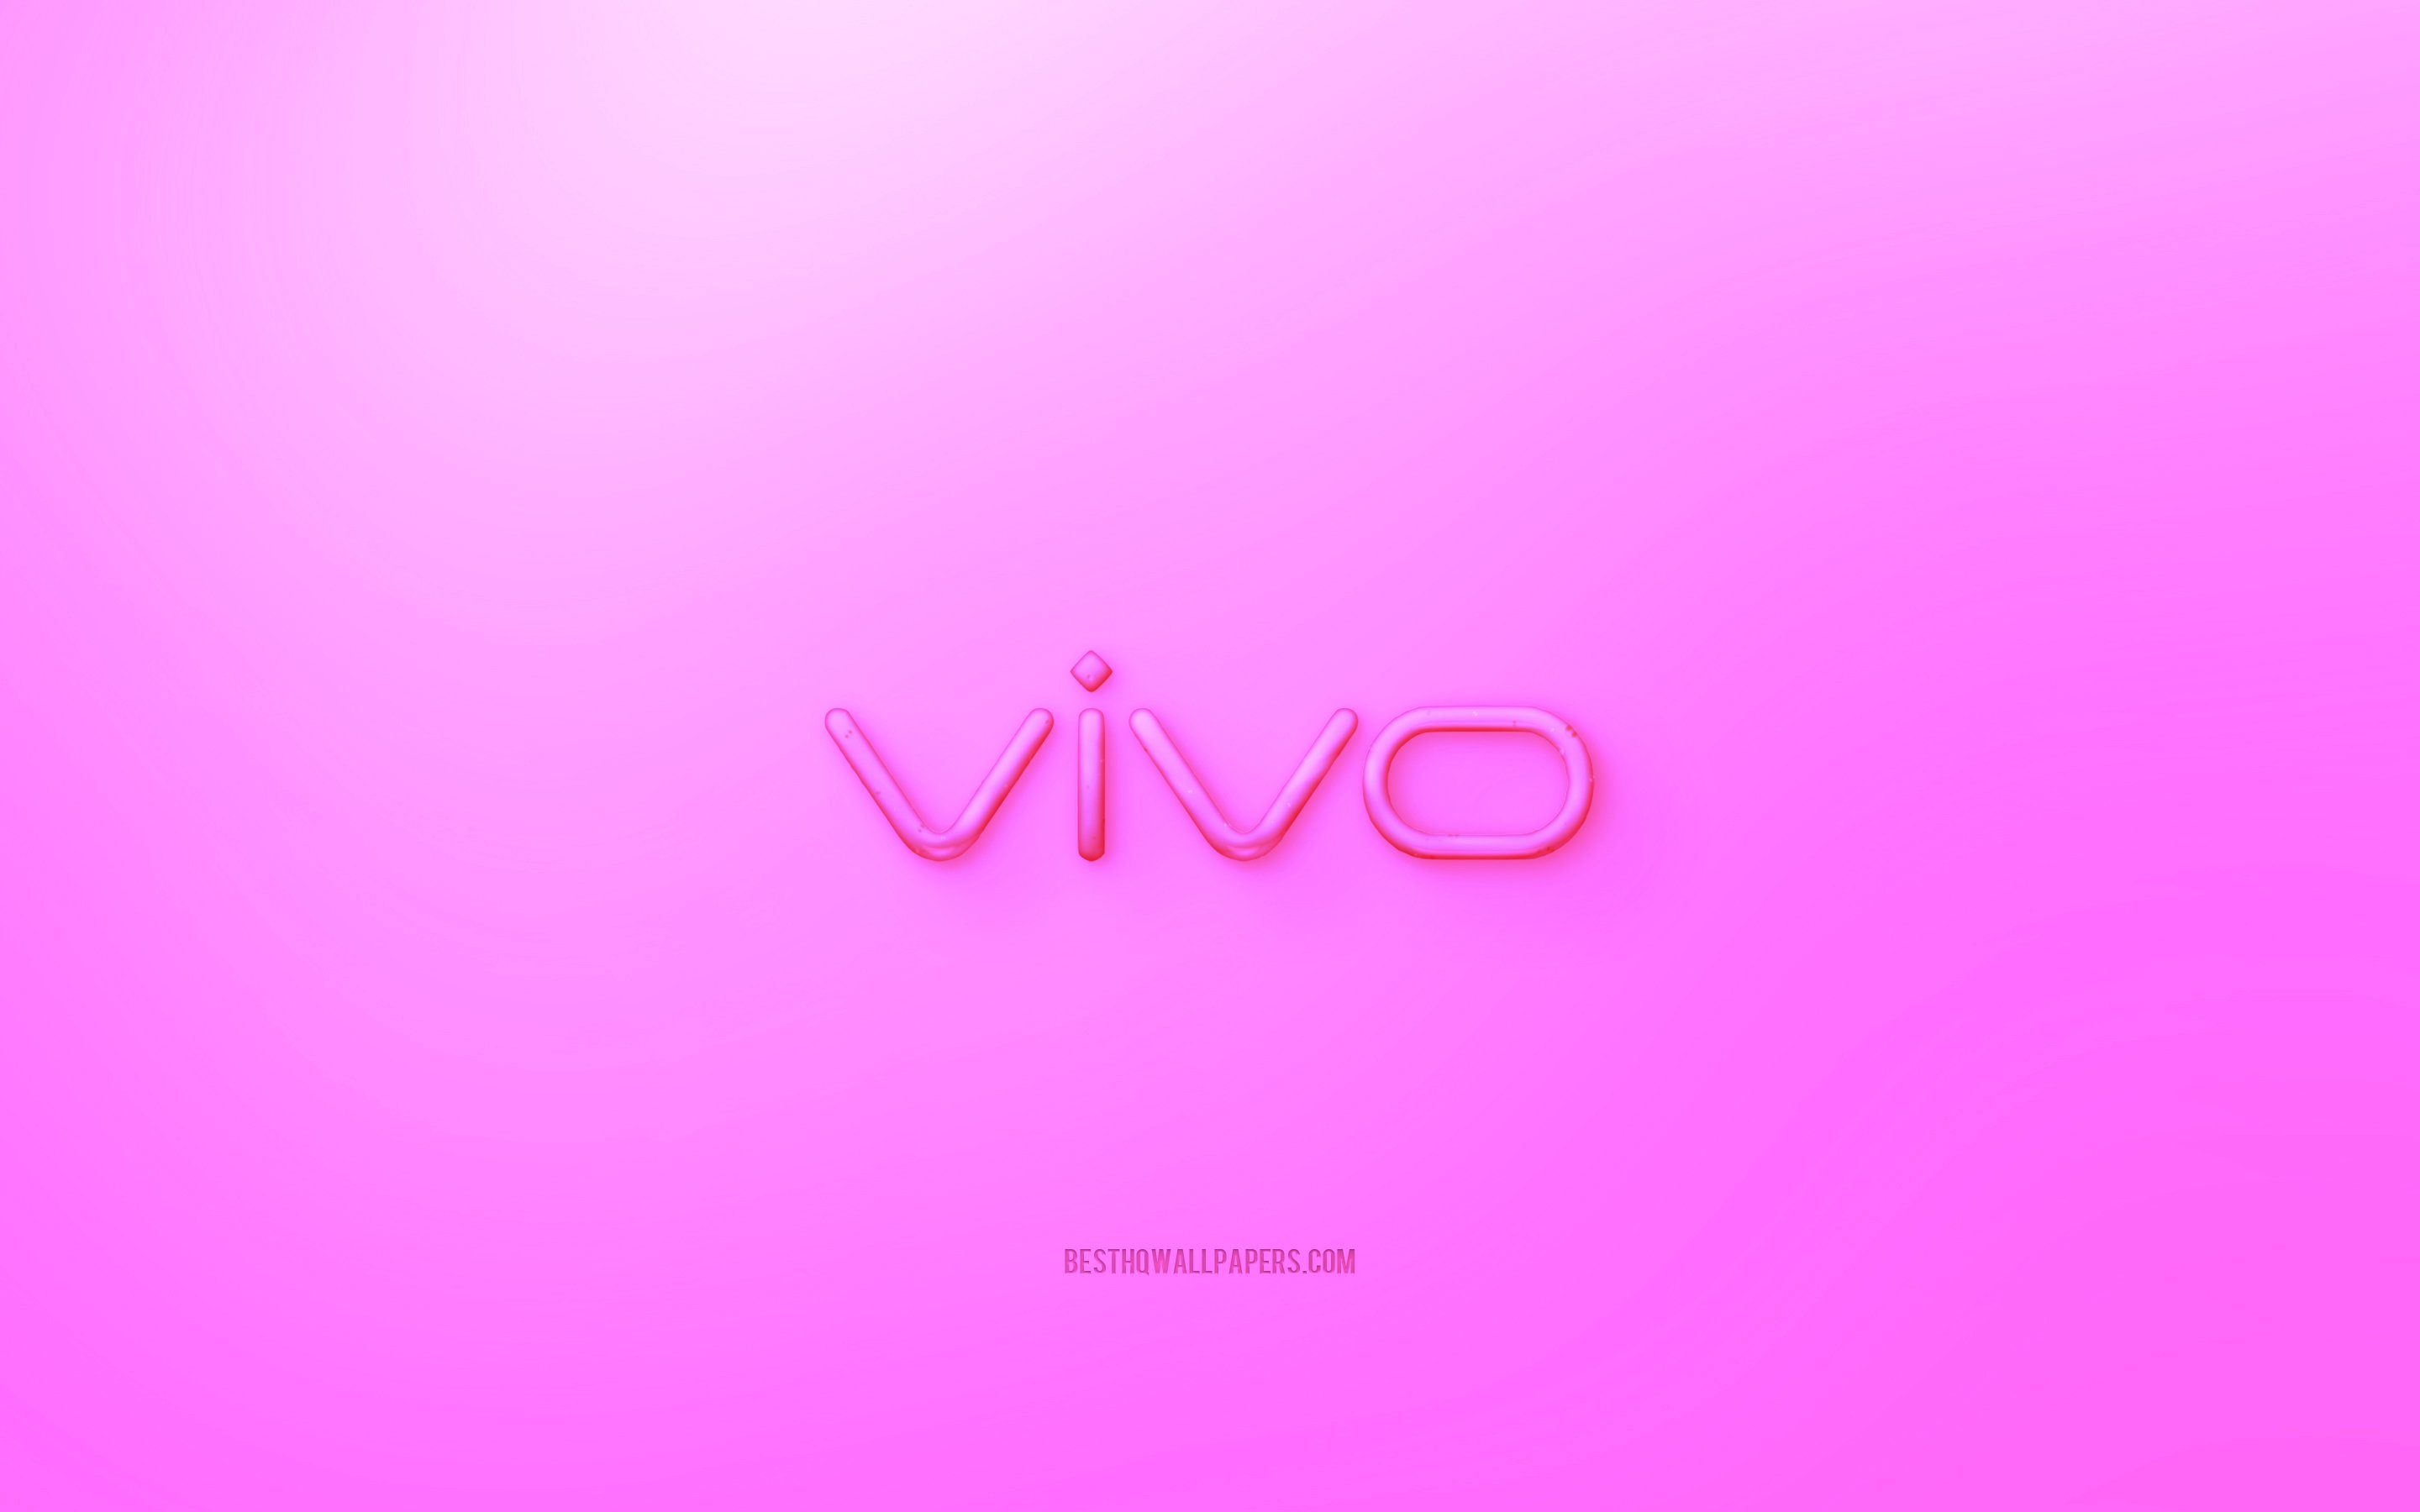 Заставка на Виво. Обои с логотипом vivo. Обои с надписью vivo. Красивые обои для vivo. Vivo рабочий